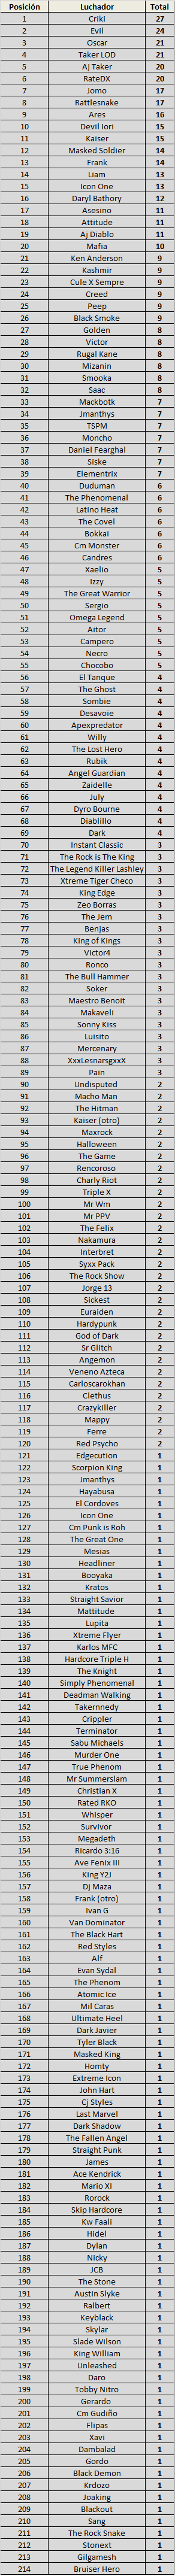 Se presenta tabla de records de superestrellas de WWEYR en Eventos estelares de PPV List89